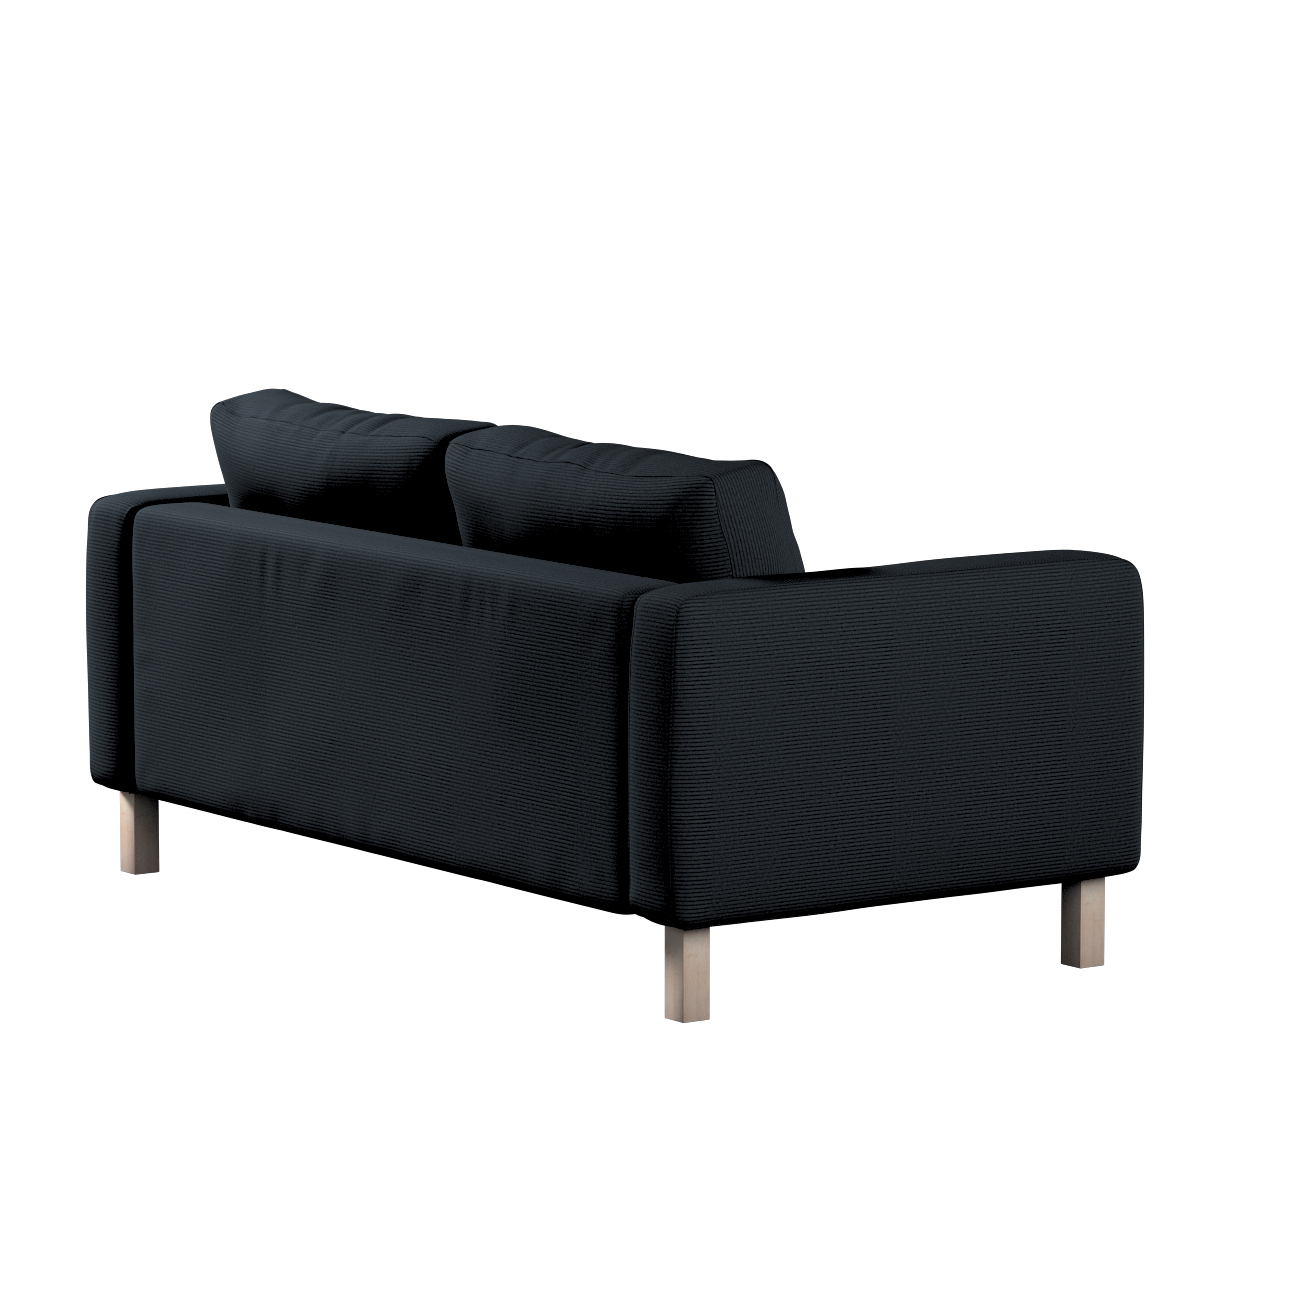 Bezug für Karlstad 2-Sitzer Sofa nicht ausklappbar, anthrazit, Sofahusse, K günstig online kaufen